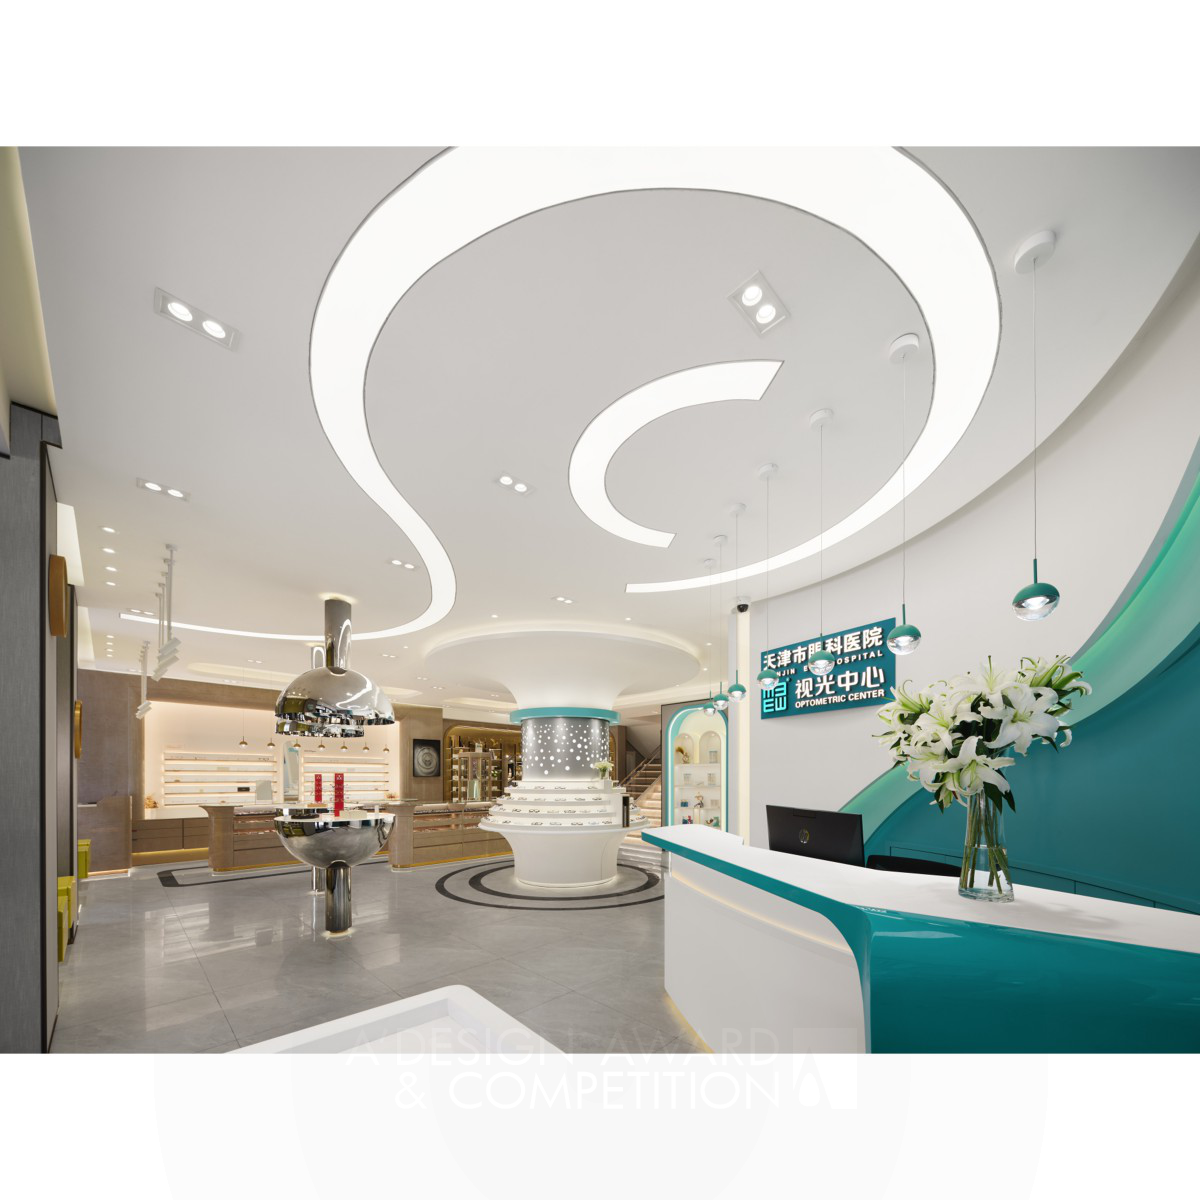 Ke Luo's Visionary Design for Binhai Second Sub's Optometry Center